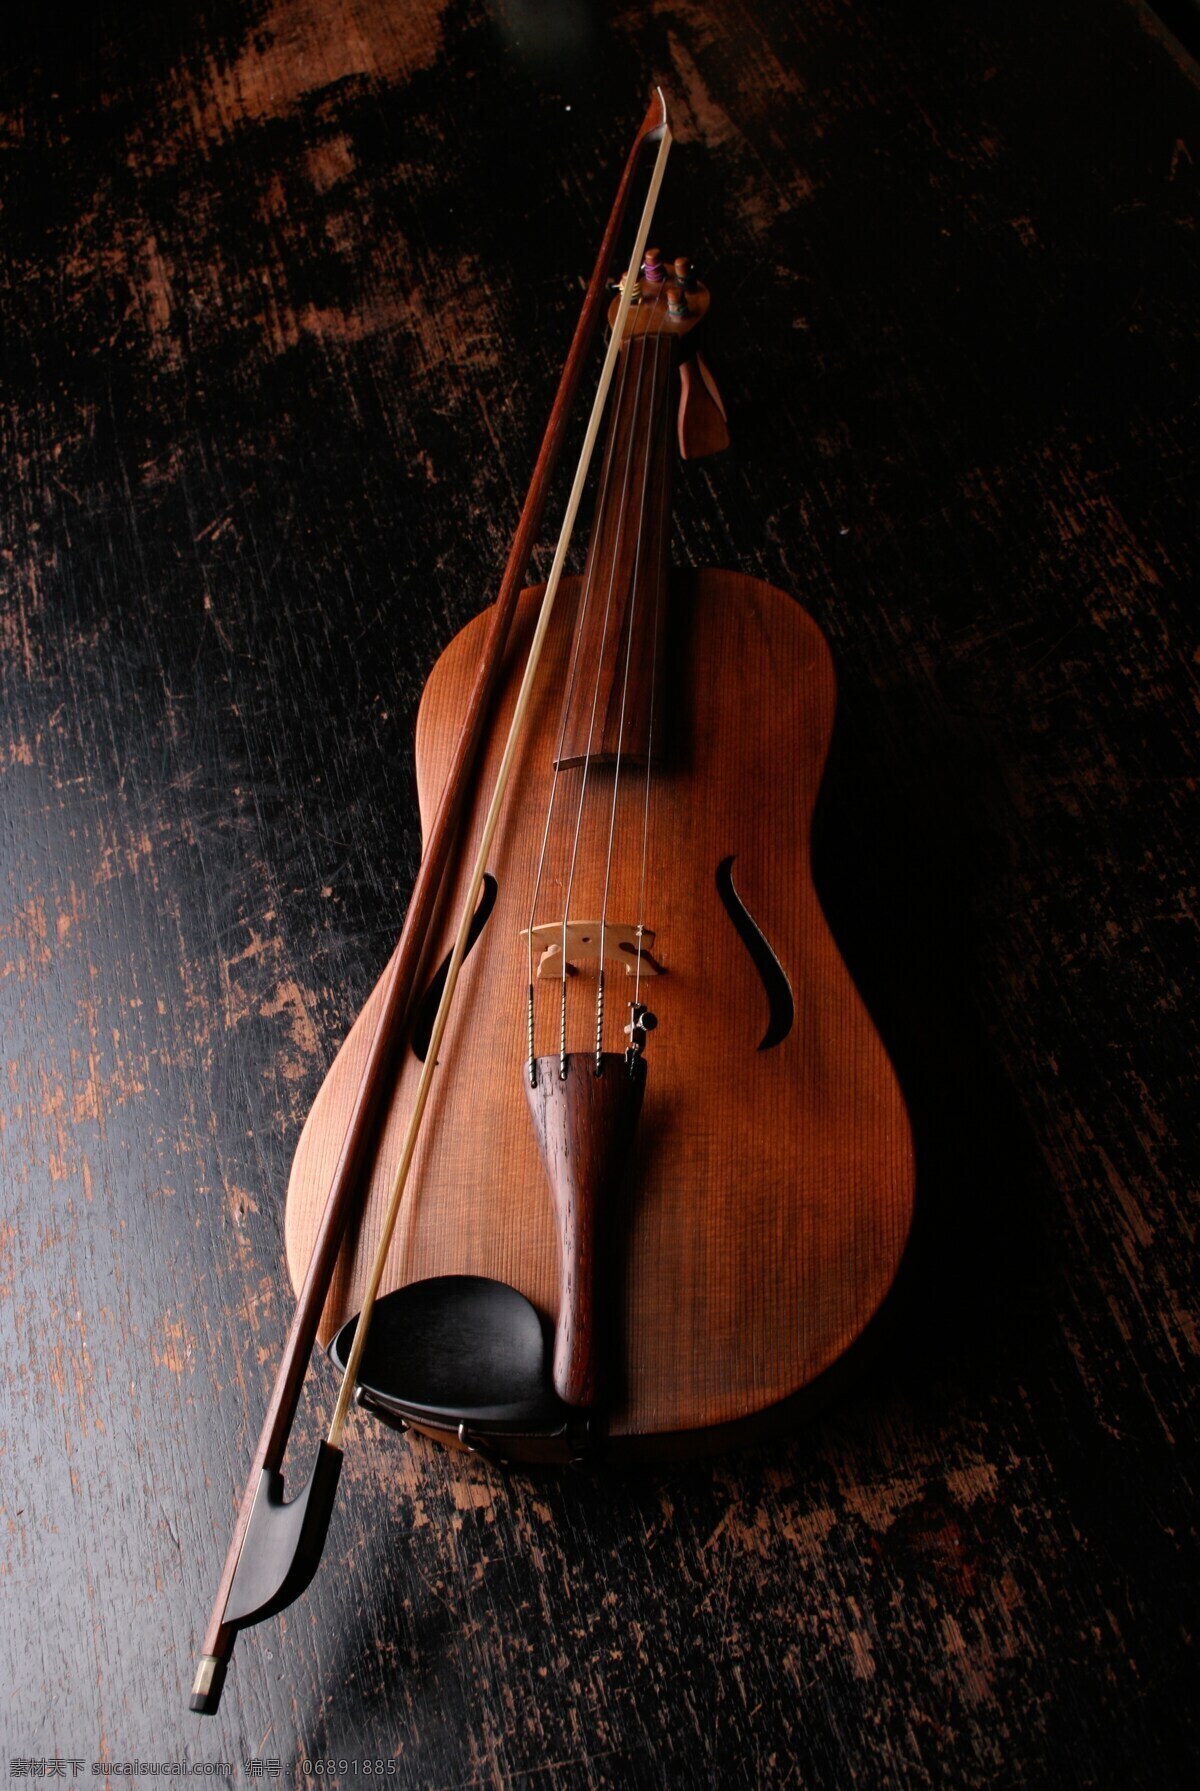 小提琴 乐器 音乐 声音 古典音乐 仪器 经典 木 弦乐器 黑色